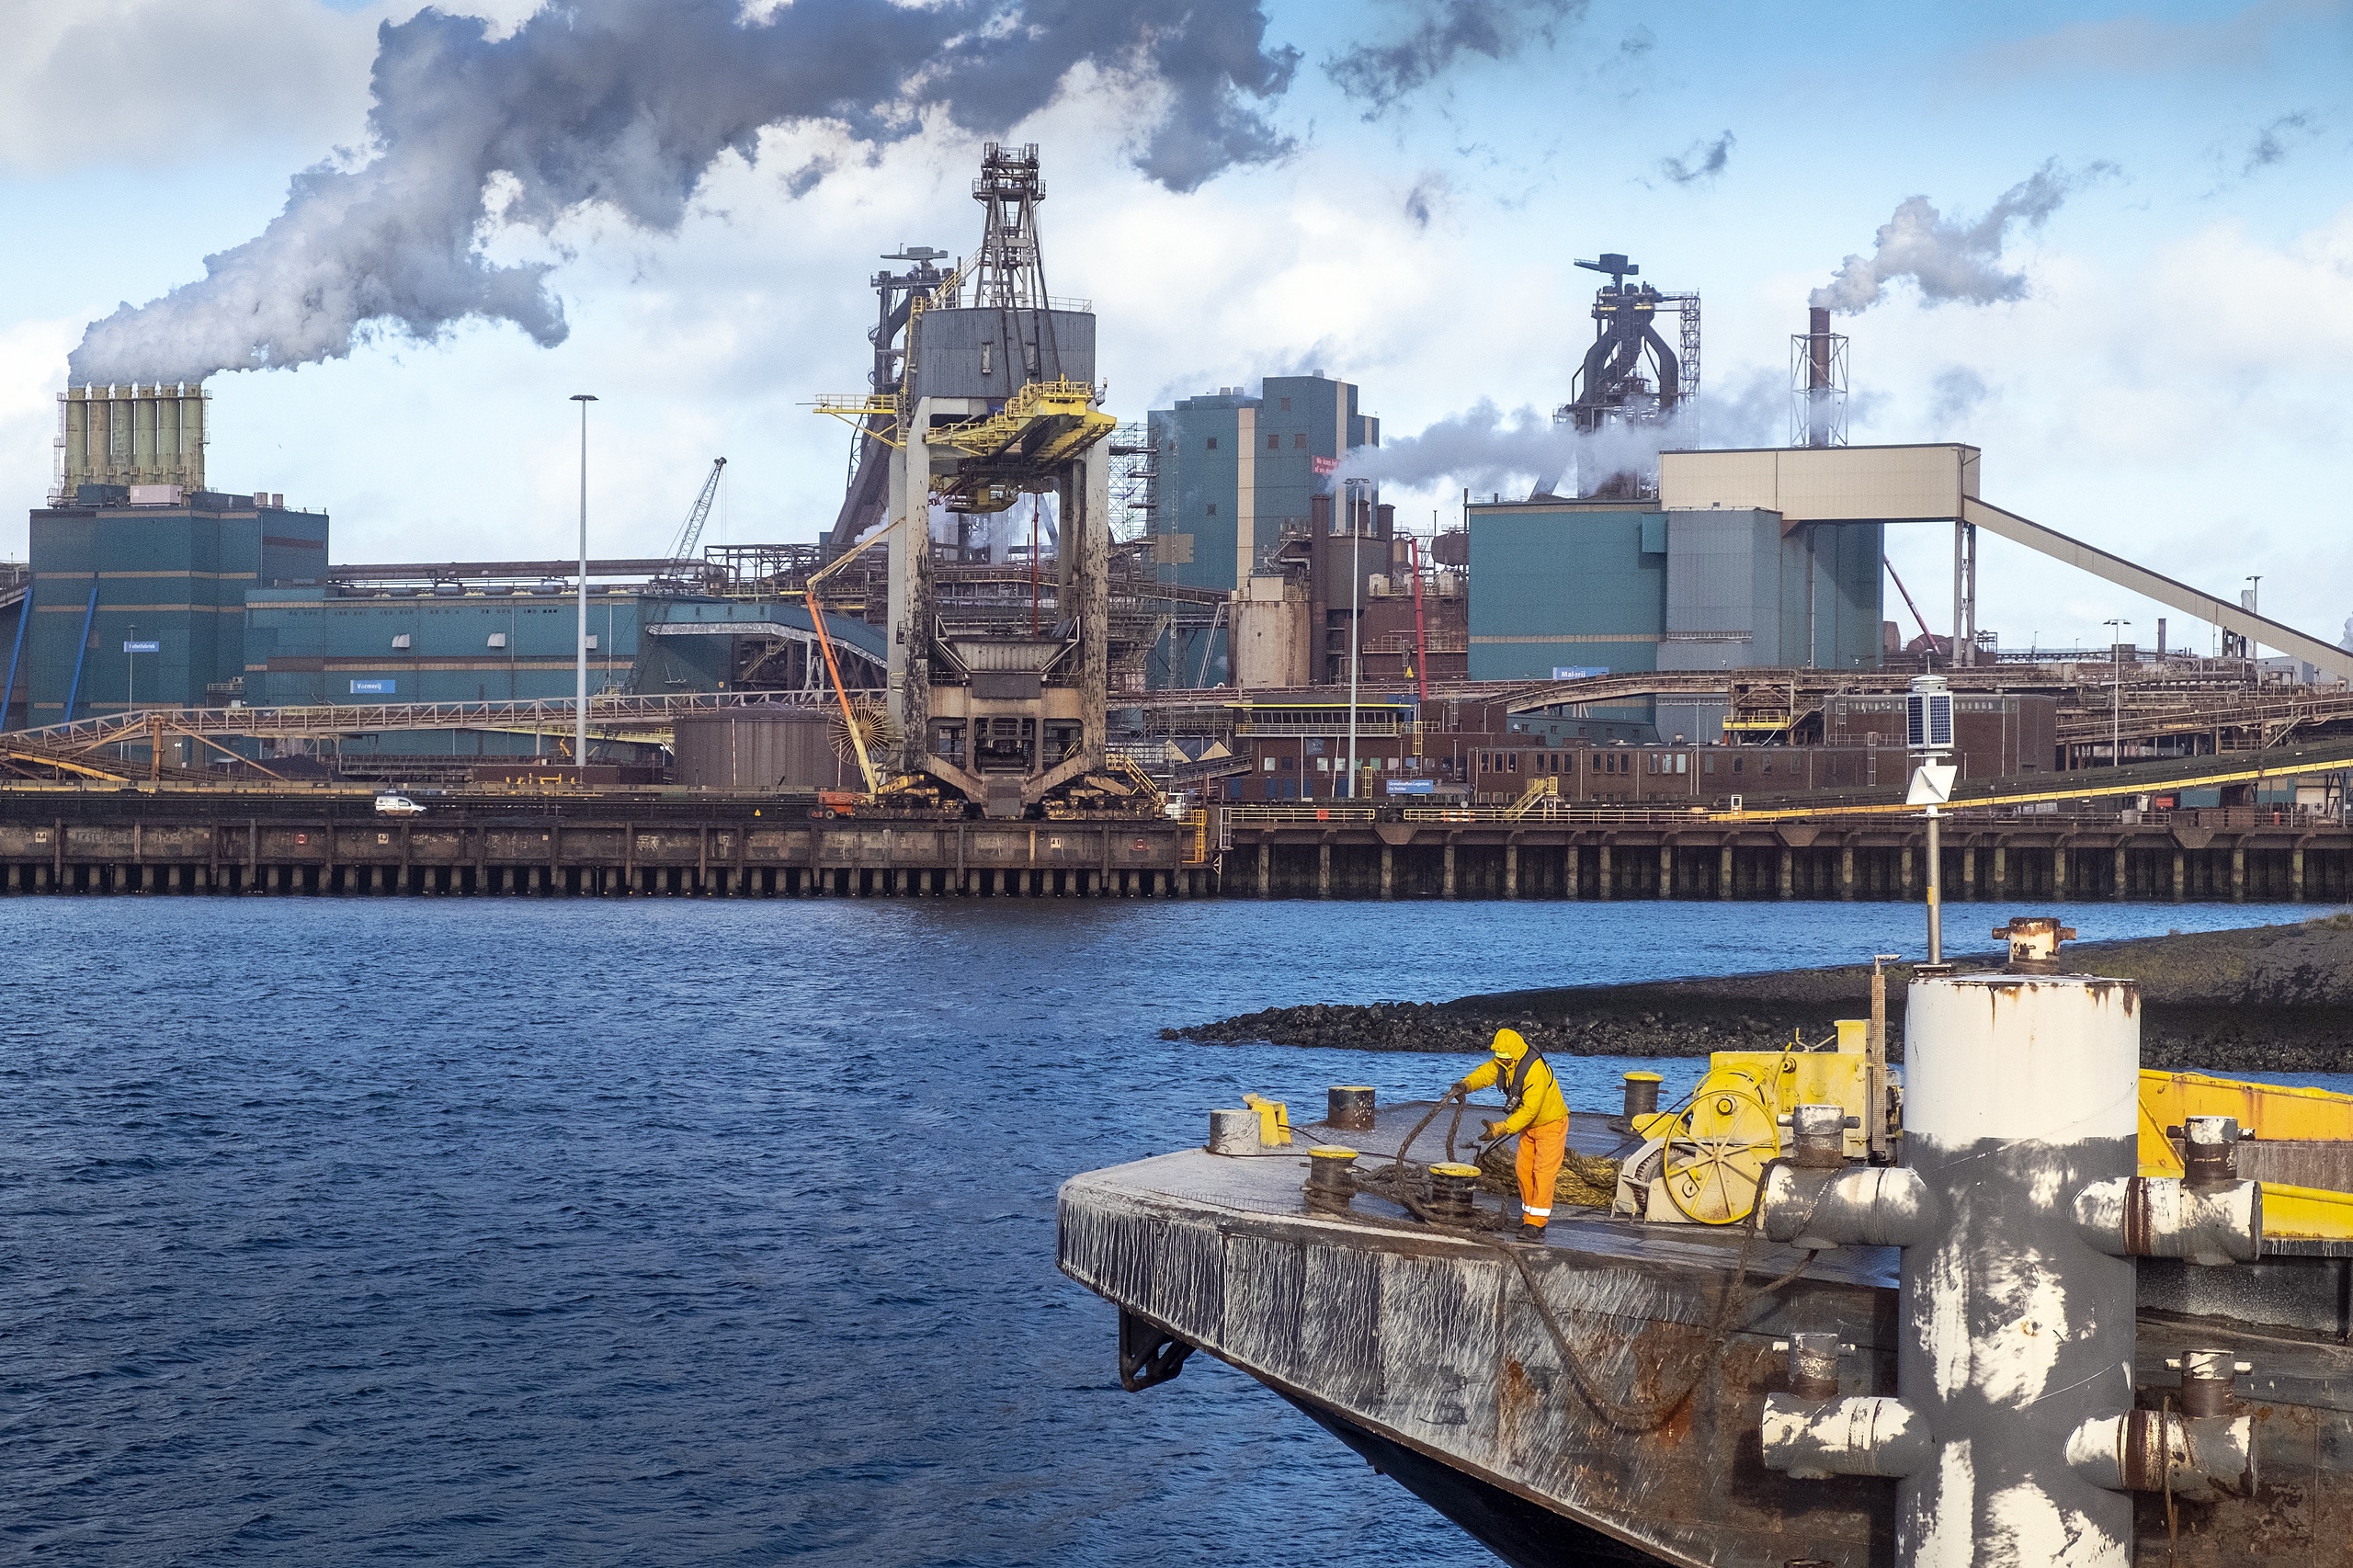 Het Openbaar Ministerie (OM) heeft dinsdag met een team van experts onderzoek verricht op het terrein van Tata Steel IJmuiden. Ze wilden 'meer inzicht krijgen' in het productieproces van staal en de werking van de cokes- en gasfabrieken, laat het OM weten. 